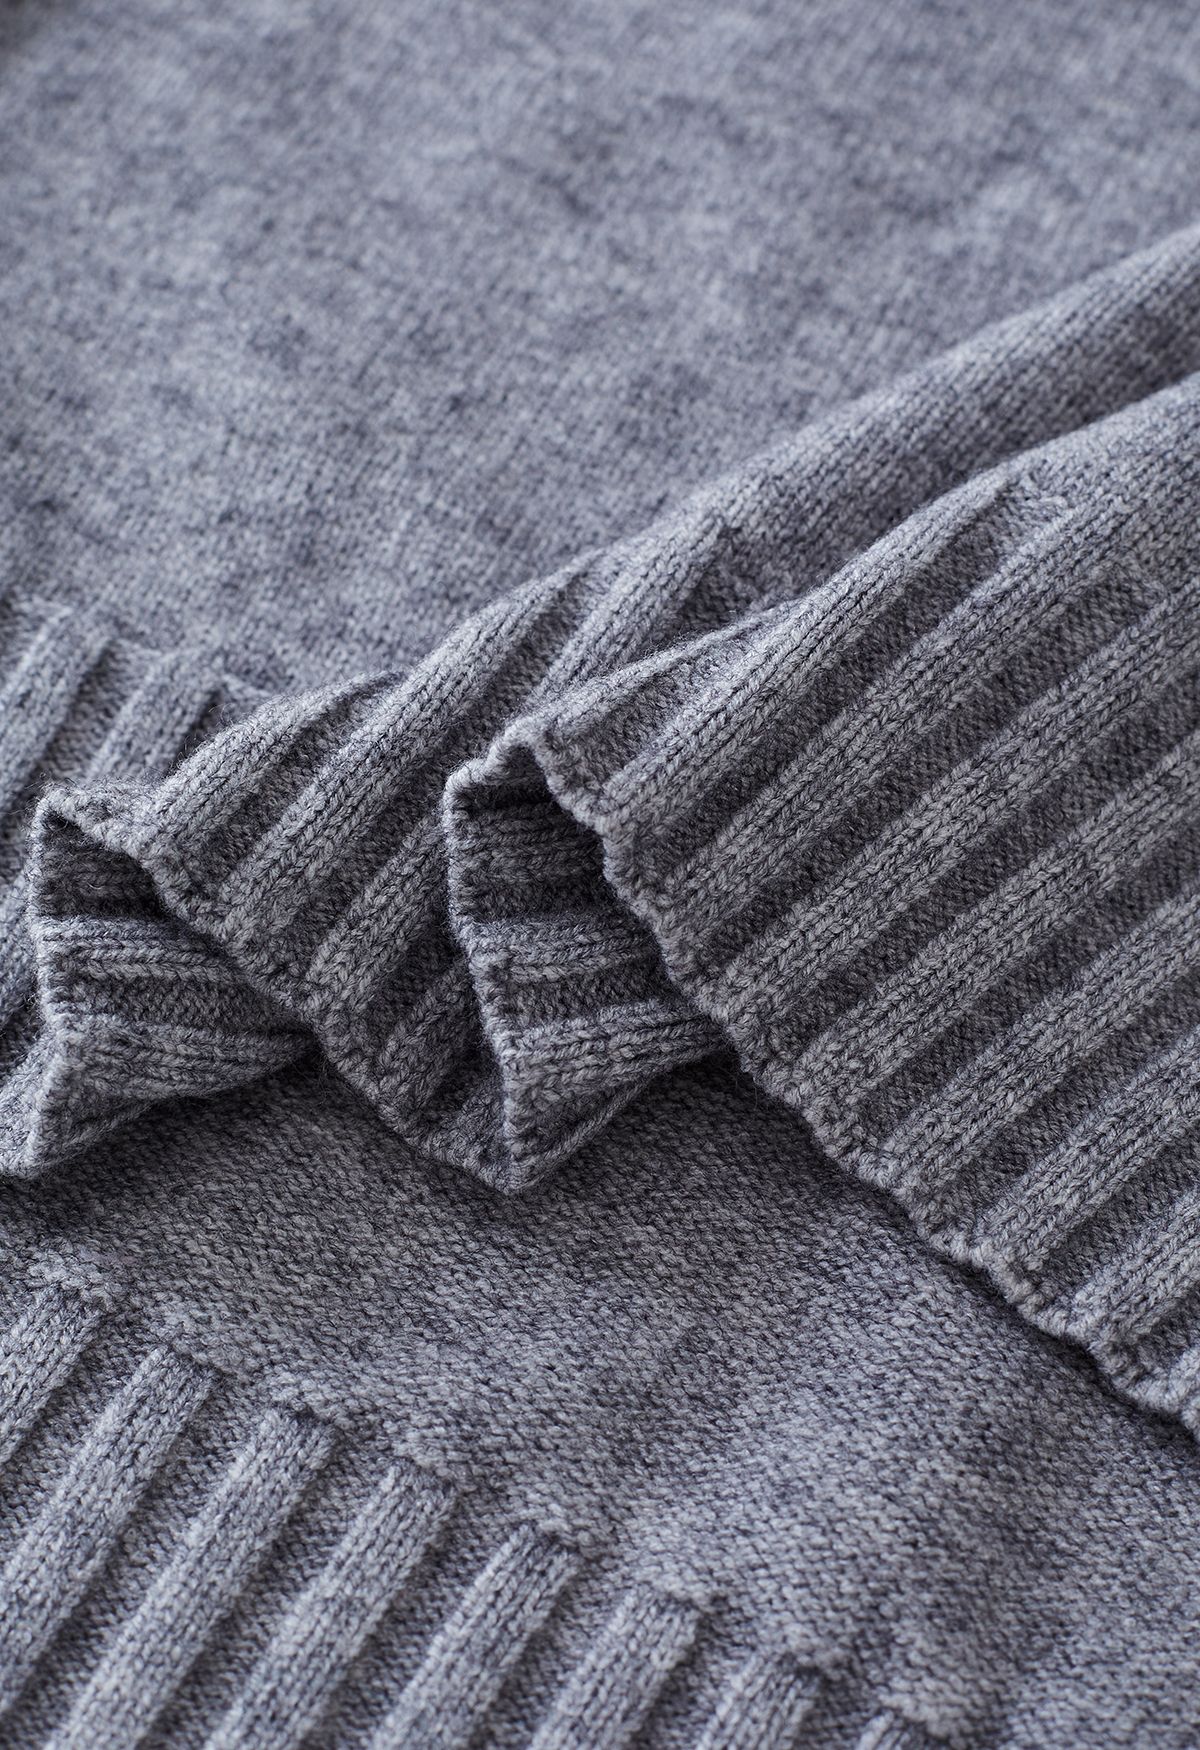 Conjunto de suéter de cuello alto con puños abotonados y pantalones de punto en gris